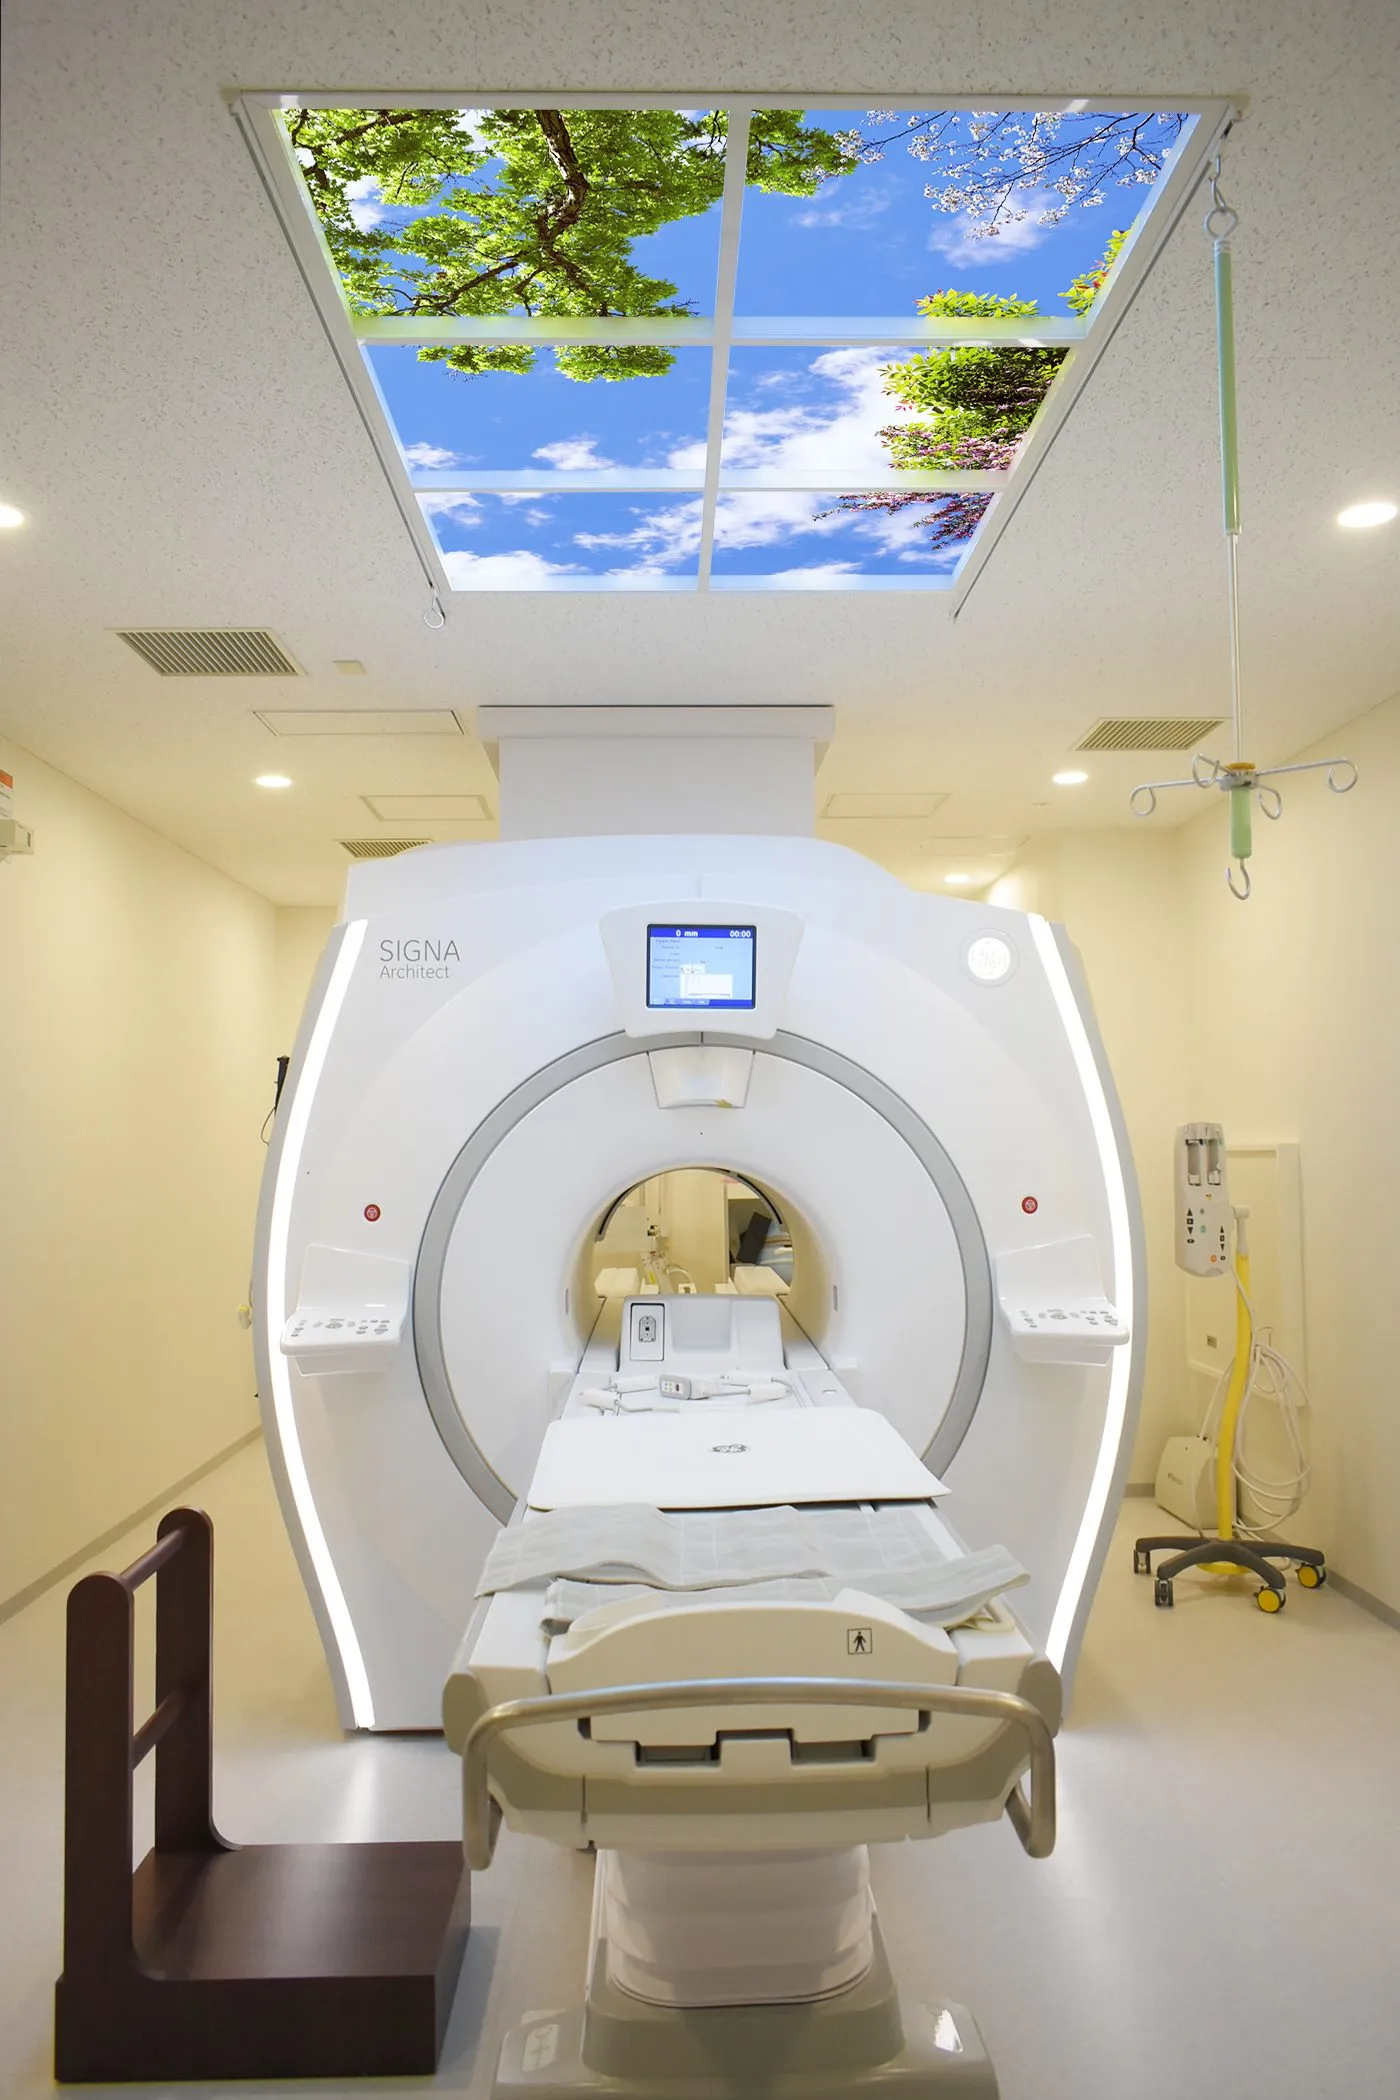 Nagasaki University MRI LSC Image 1